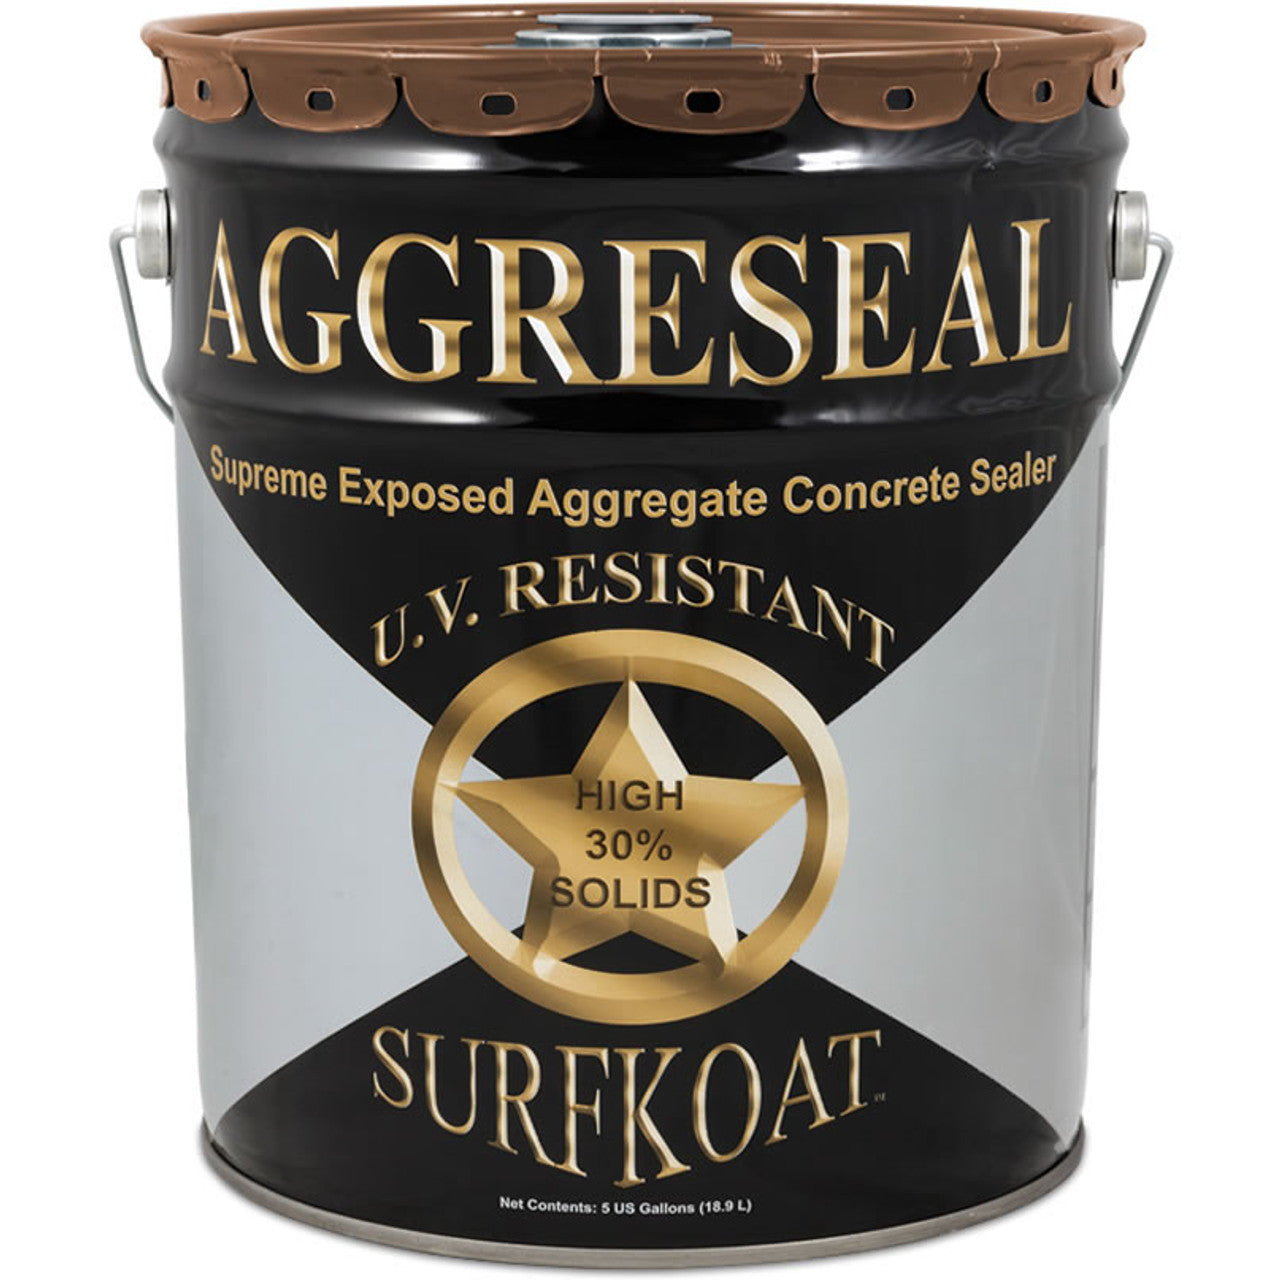 Surfkoat Aggreseal Supreme Brown 350 VOC 1 Gallon